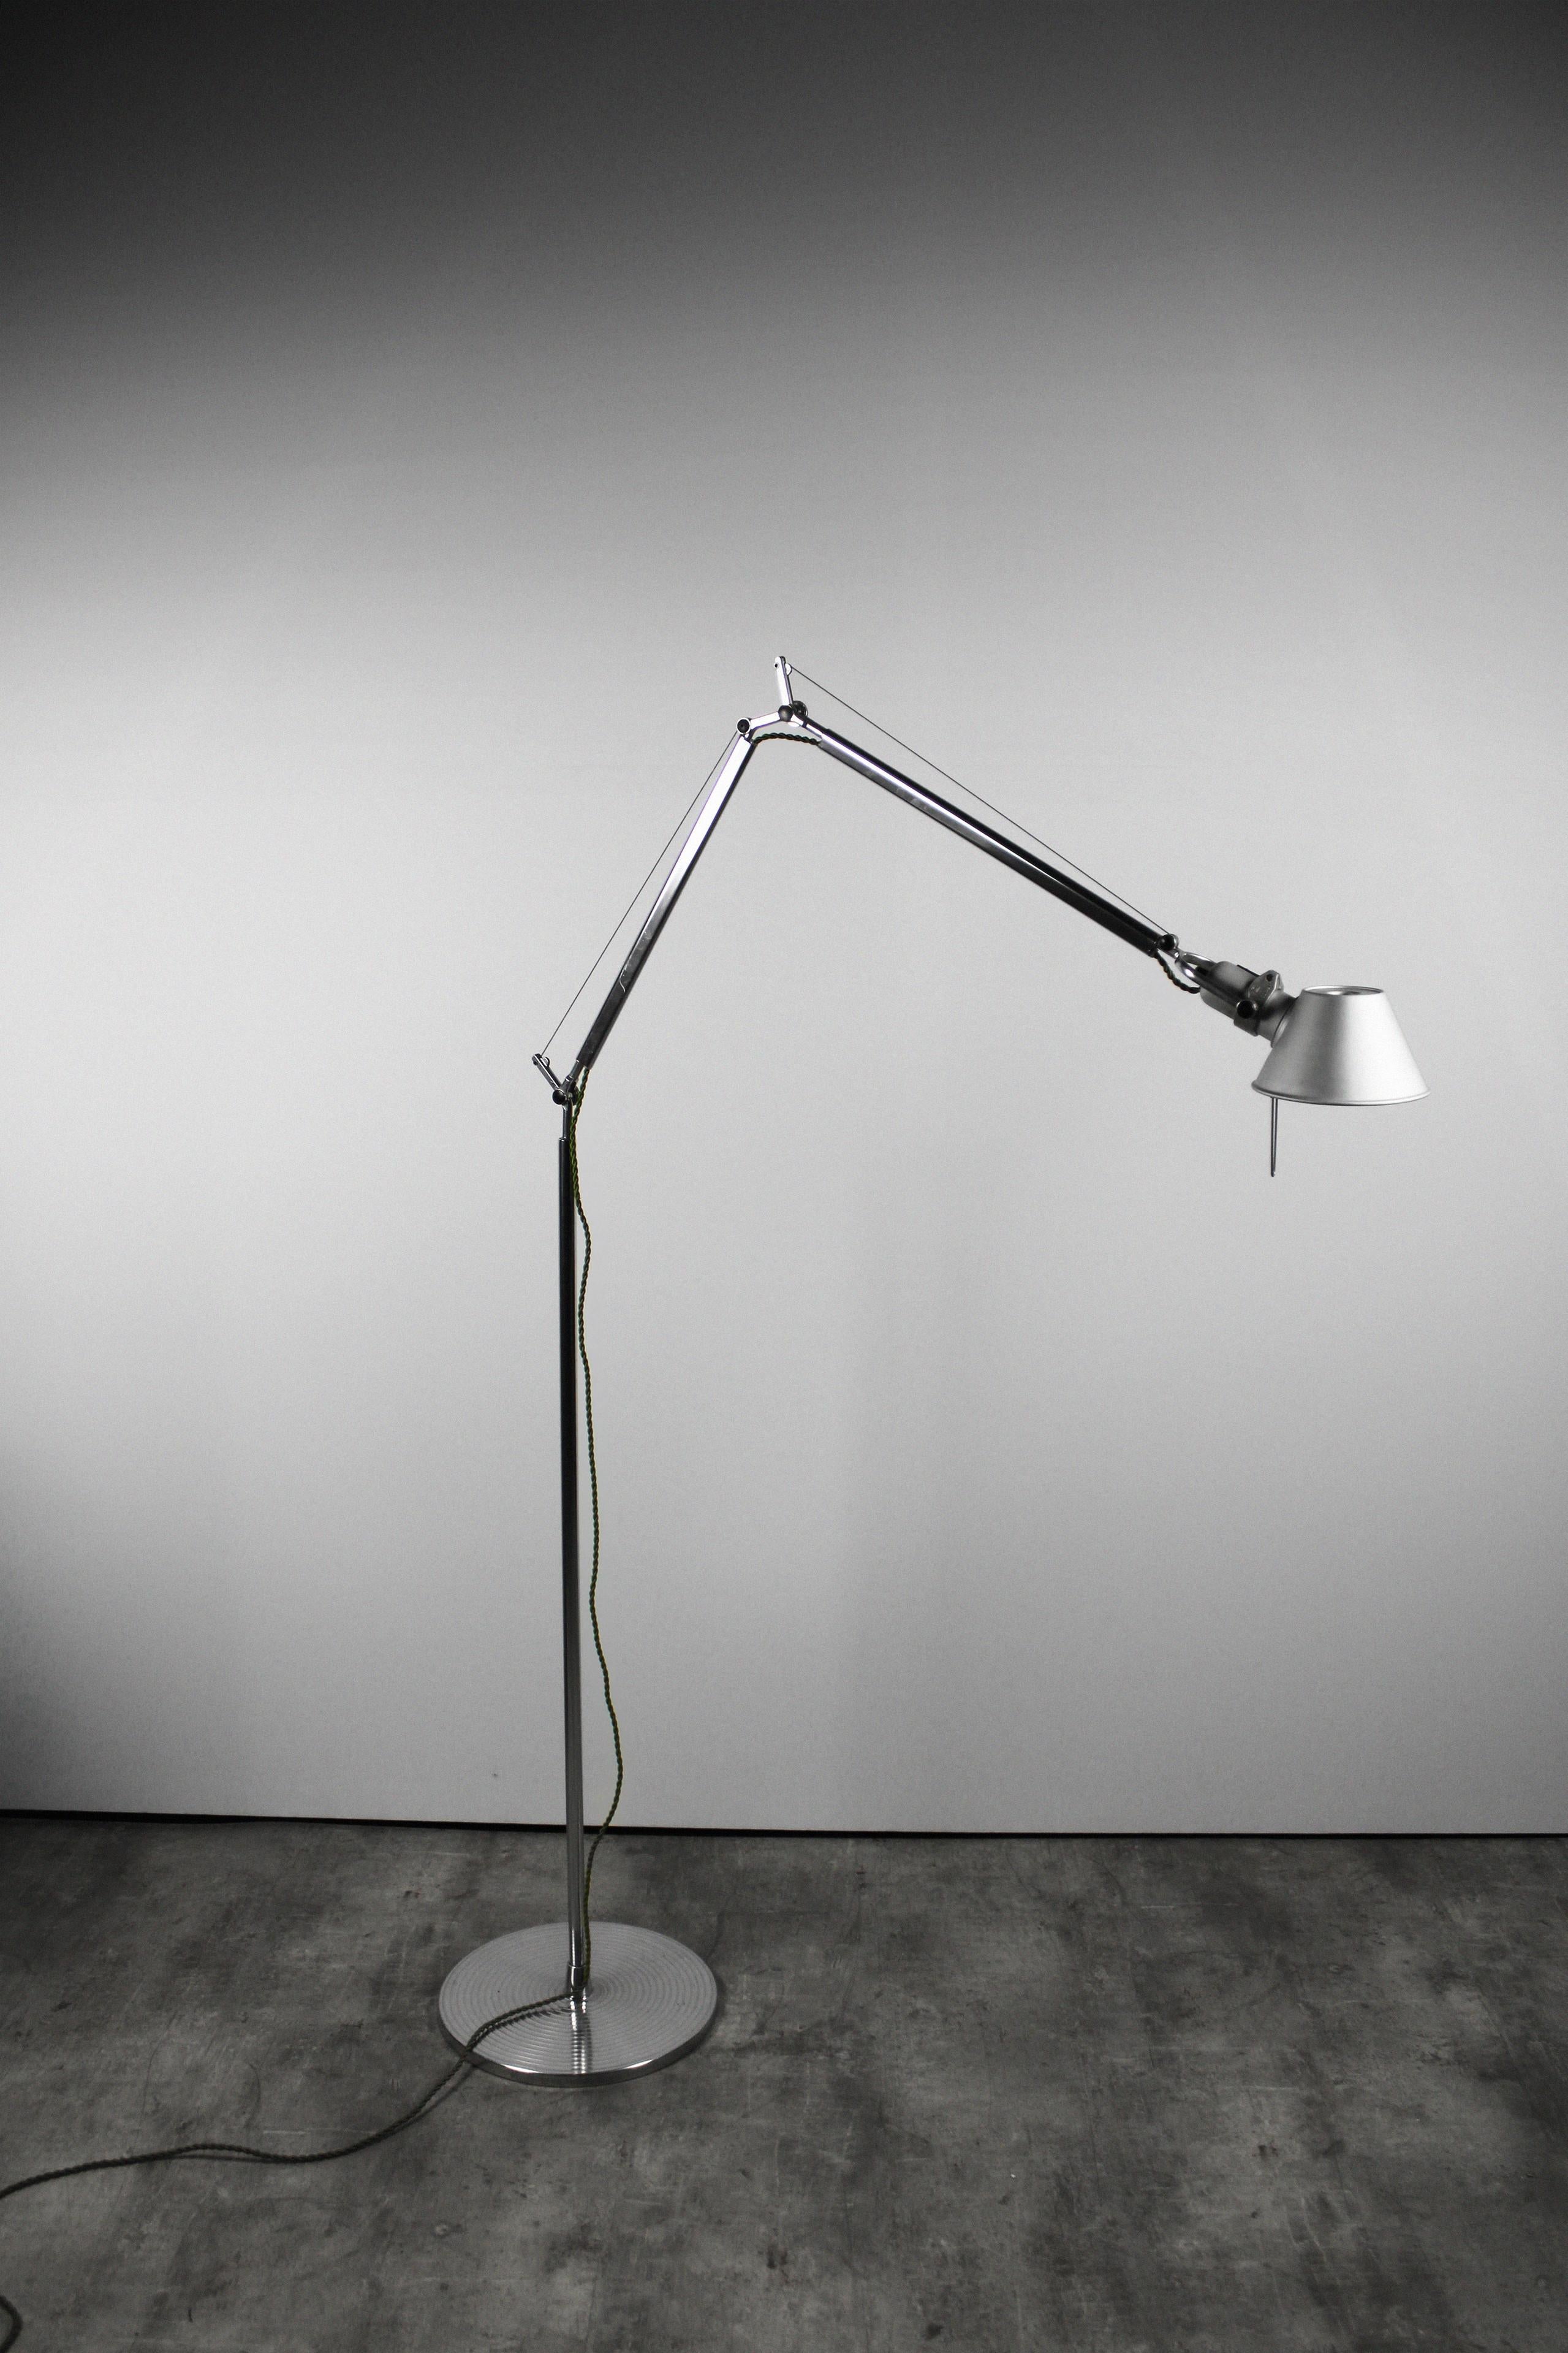 Le design de ce lampadaire vintage appelé lampadaire Tolomeo terra provient de Michel de Lucchi & Giancarlo Fassina de la série de la fin des années 1980, et est fabriqué en Italie par Artemide. Ce modèle se distingue également des autres par son